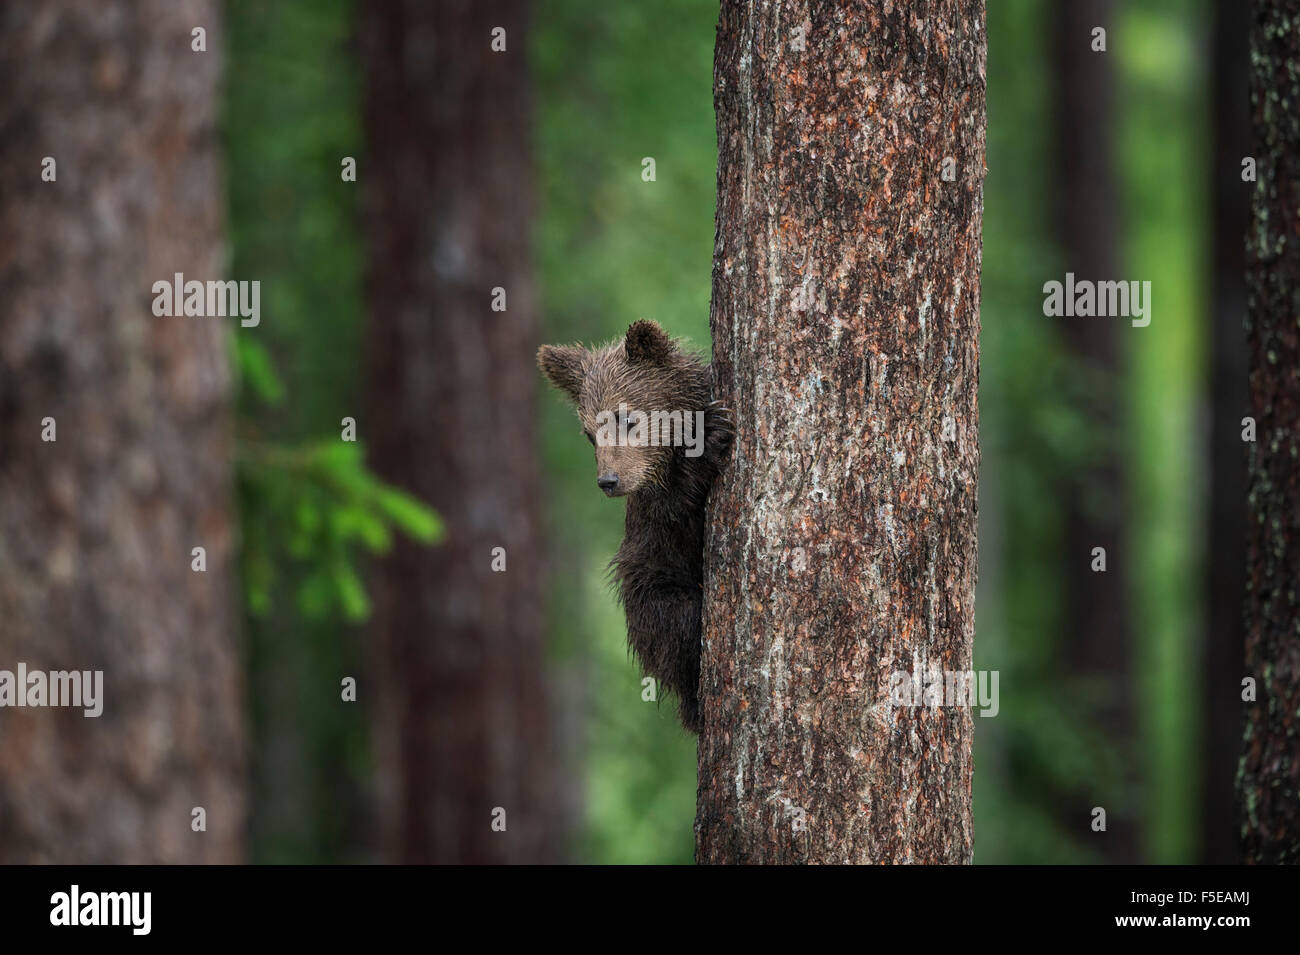 Cub ours brun (Ursus arctos) dans les arbres, Finlande, Scandinavie, Europe Banque D'Images